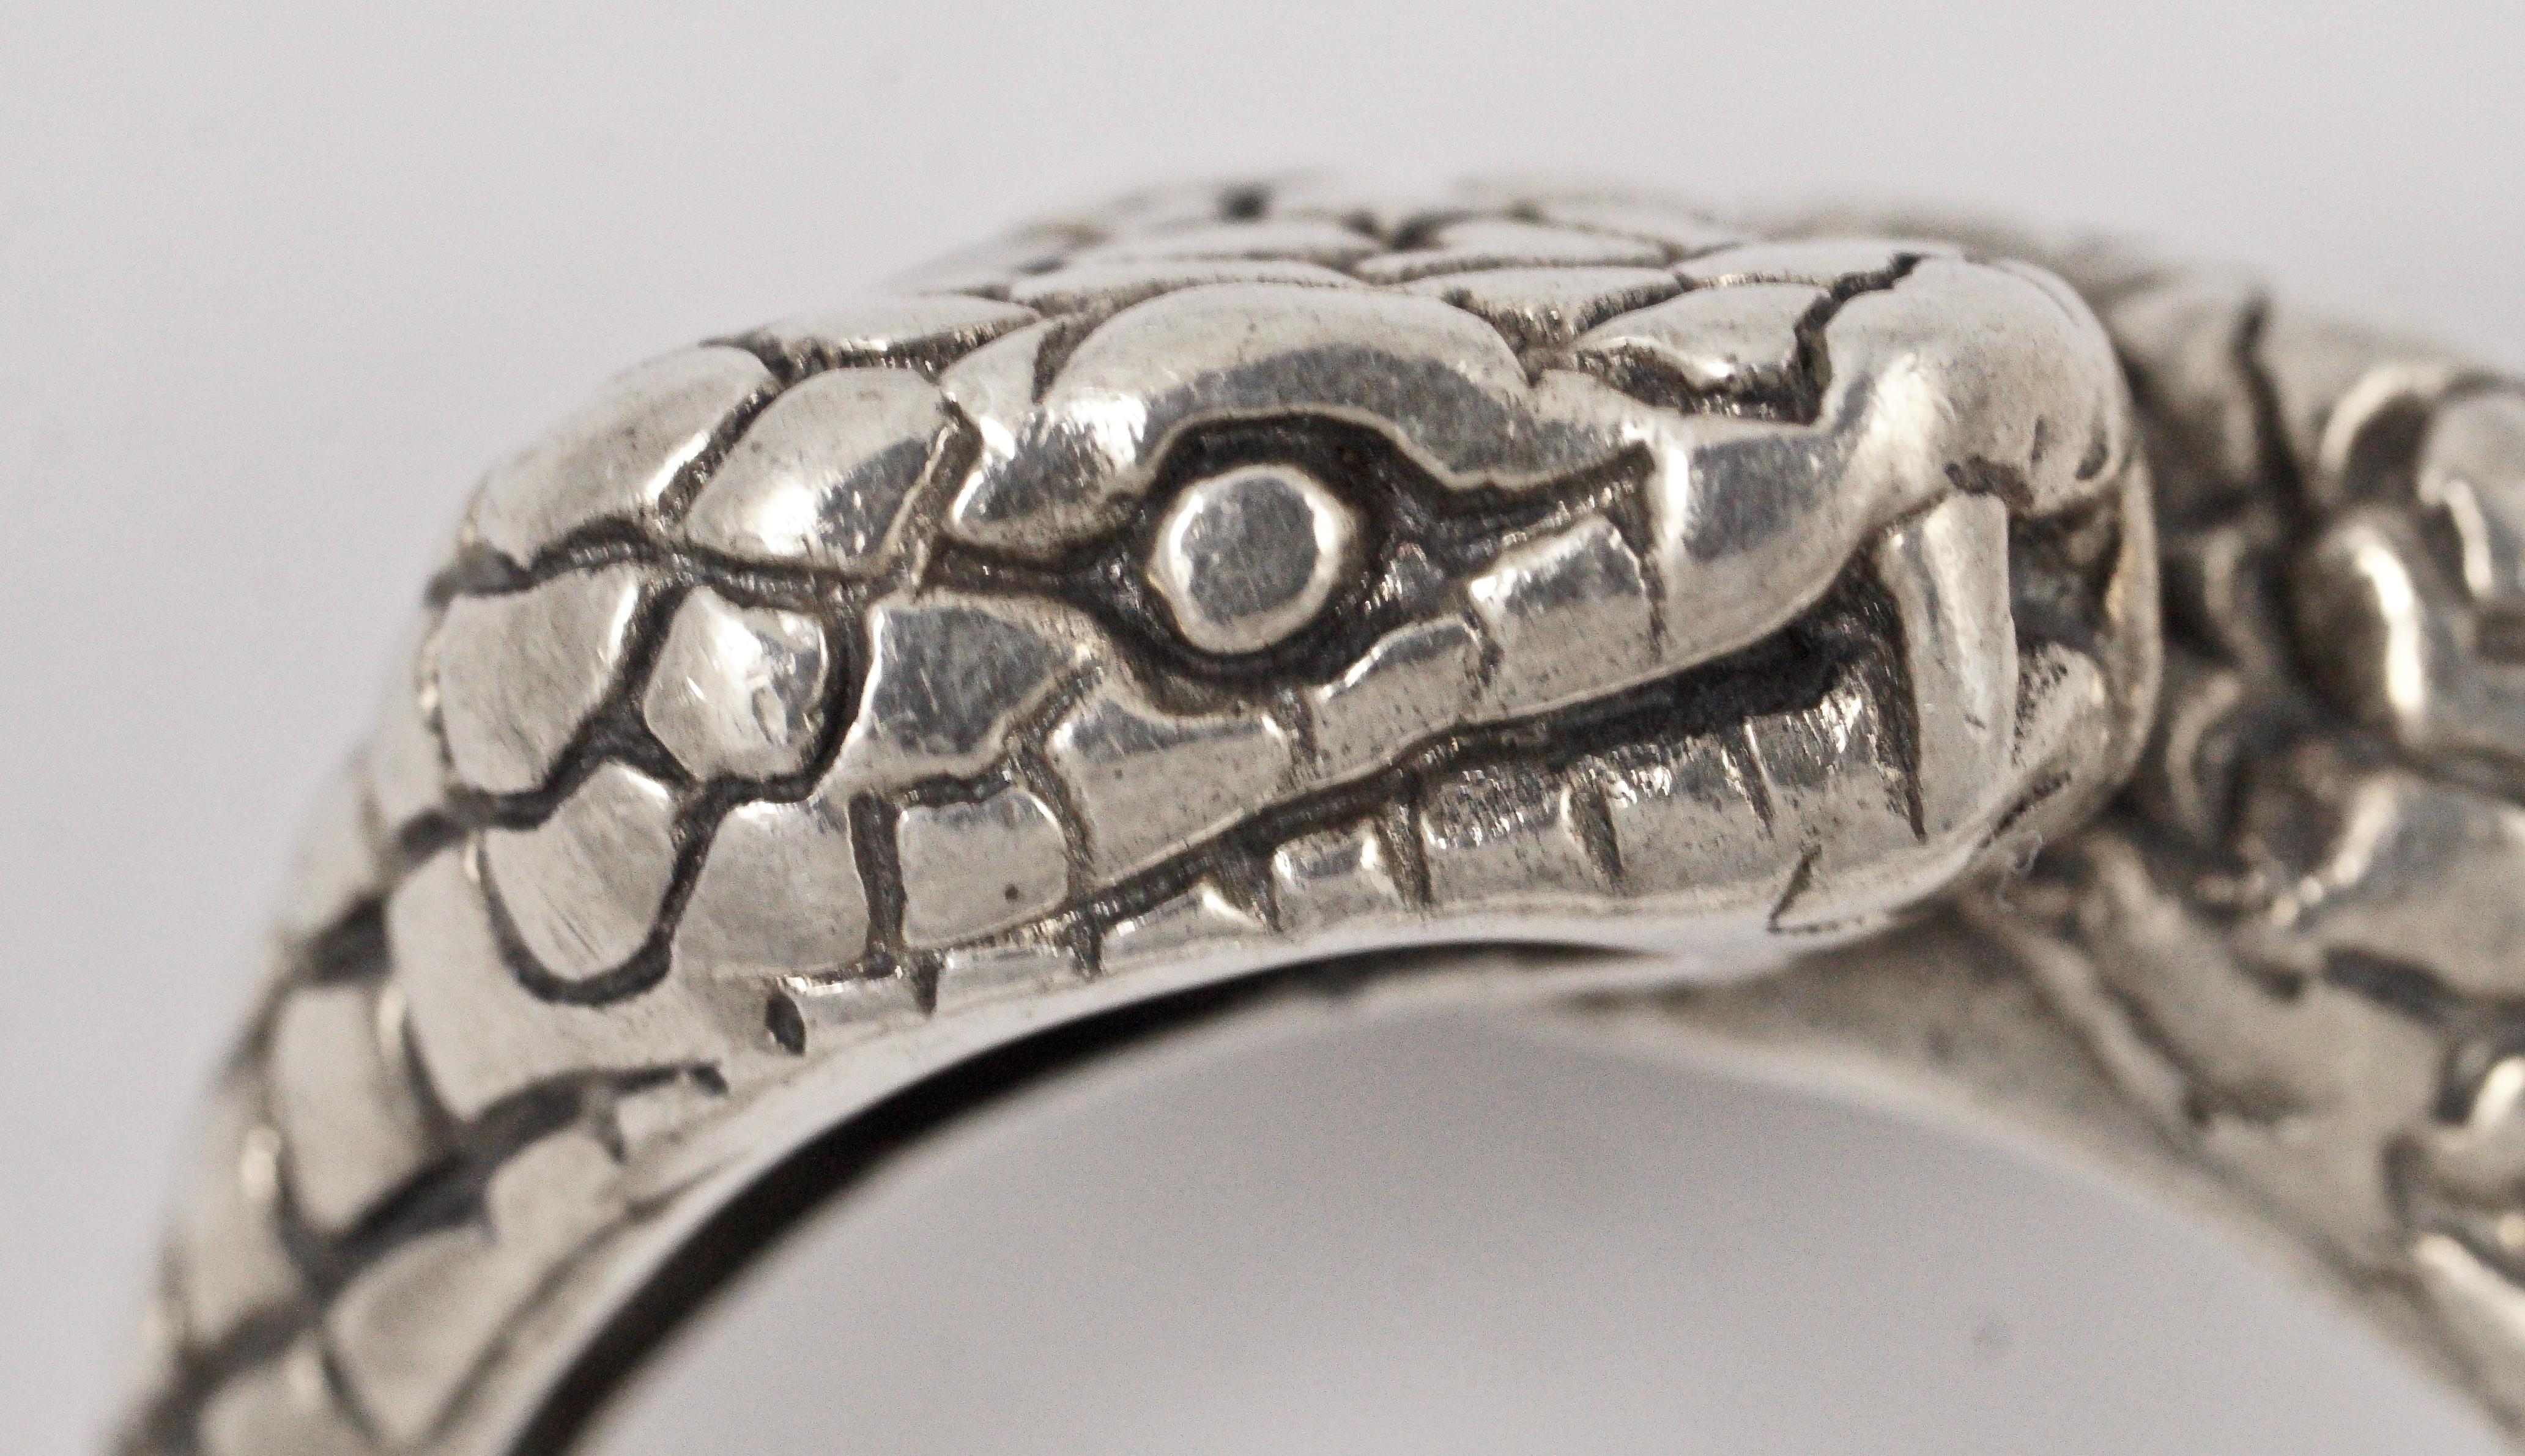 Vintage-Ring aus Sterlingsilber mit einem wunderschönen geätzten Doppelkobra-Schlangenmuster. Ringgröße UK T / US 9 5/8, und die Kobraköpfe sind jeweils etwa 1 cm breit und 0,5 cm tief.

Dies ist ein ungewöhnlicher handgefertigter Schlangenring mit